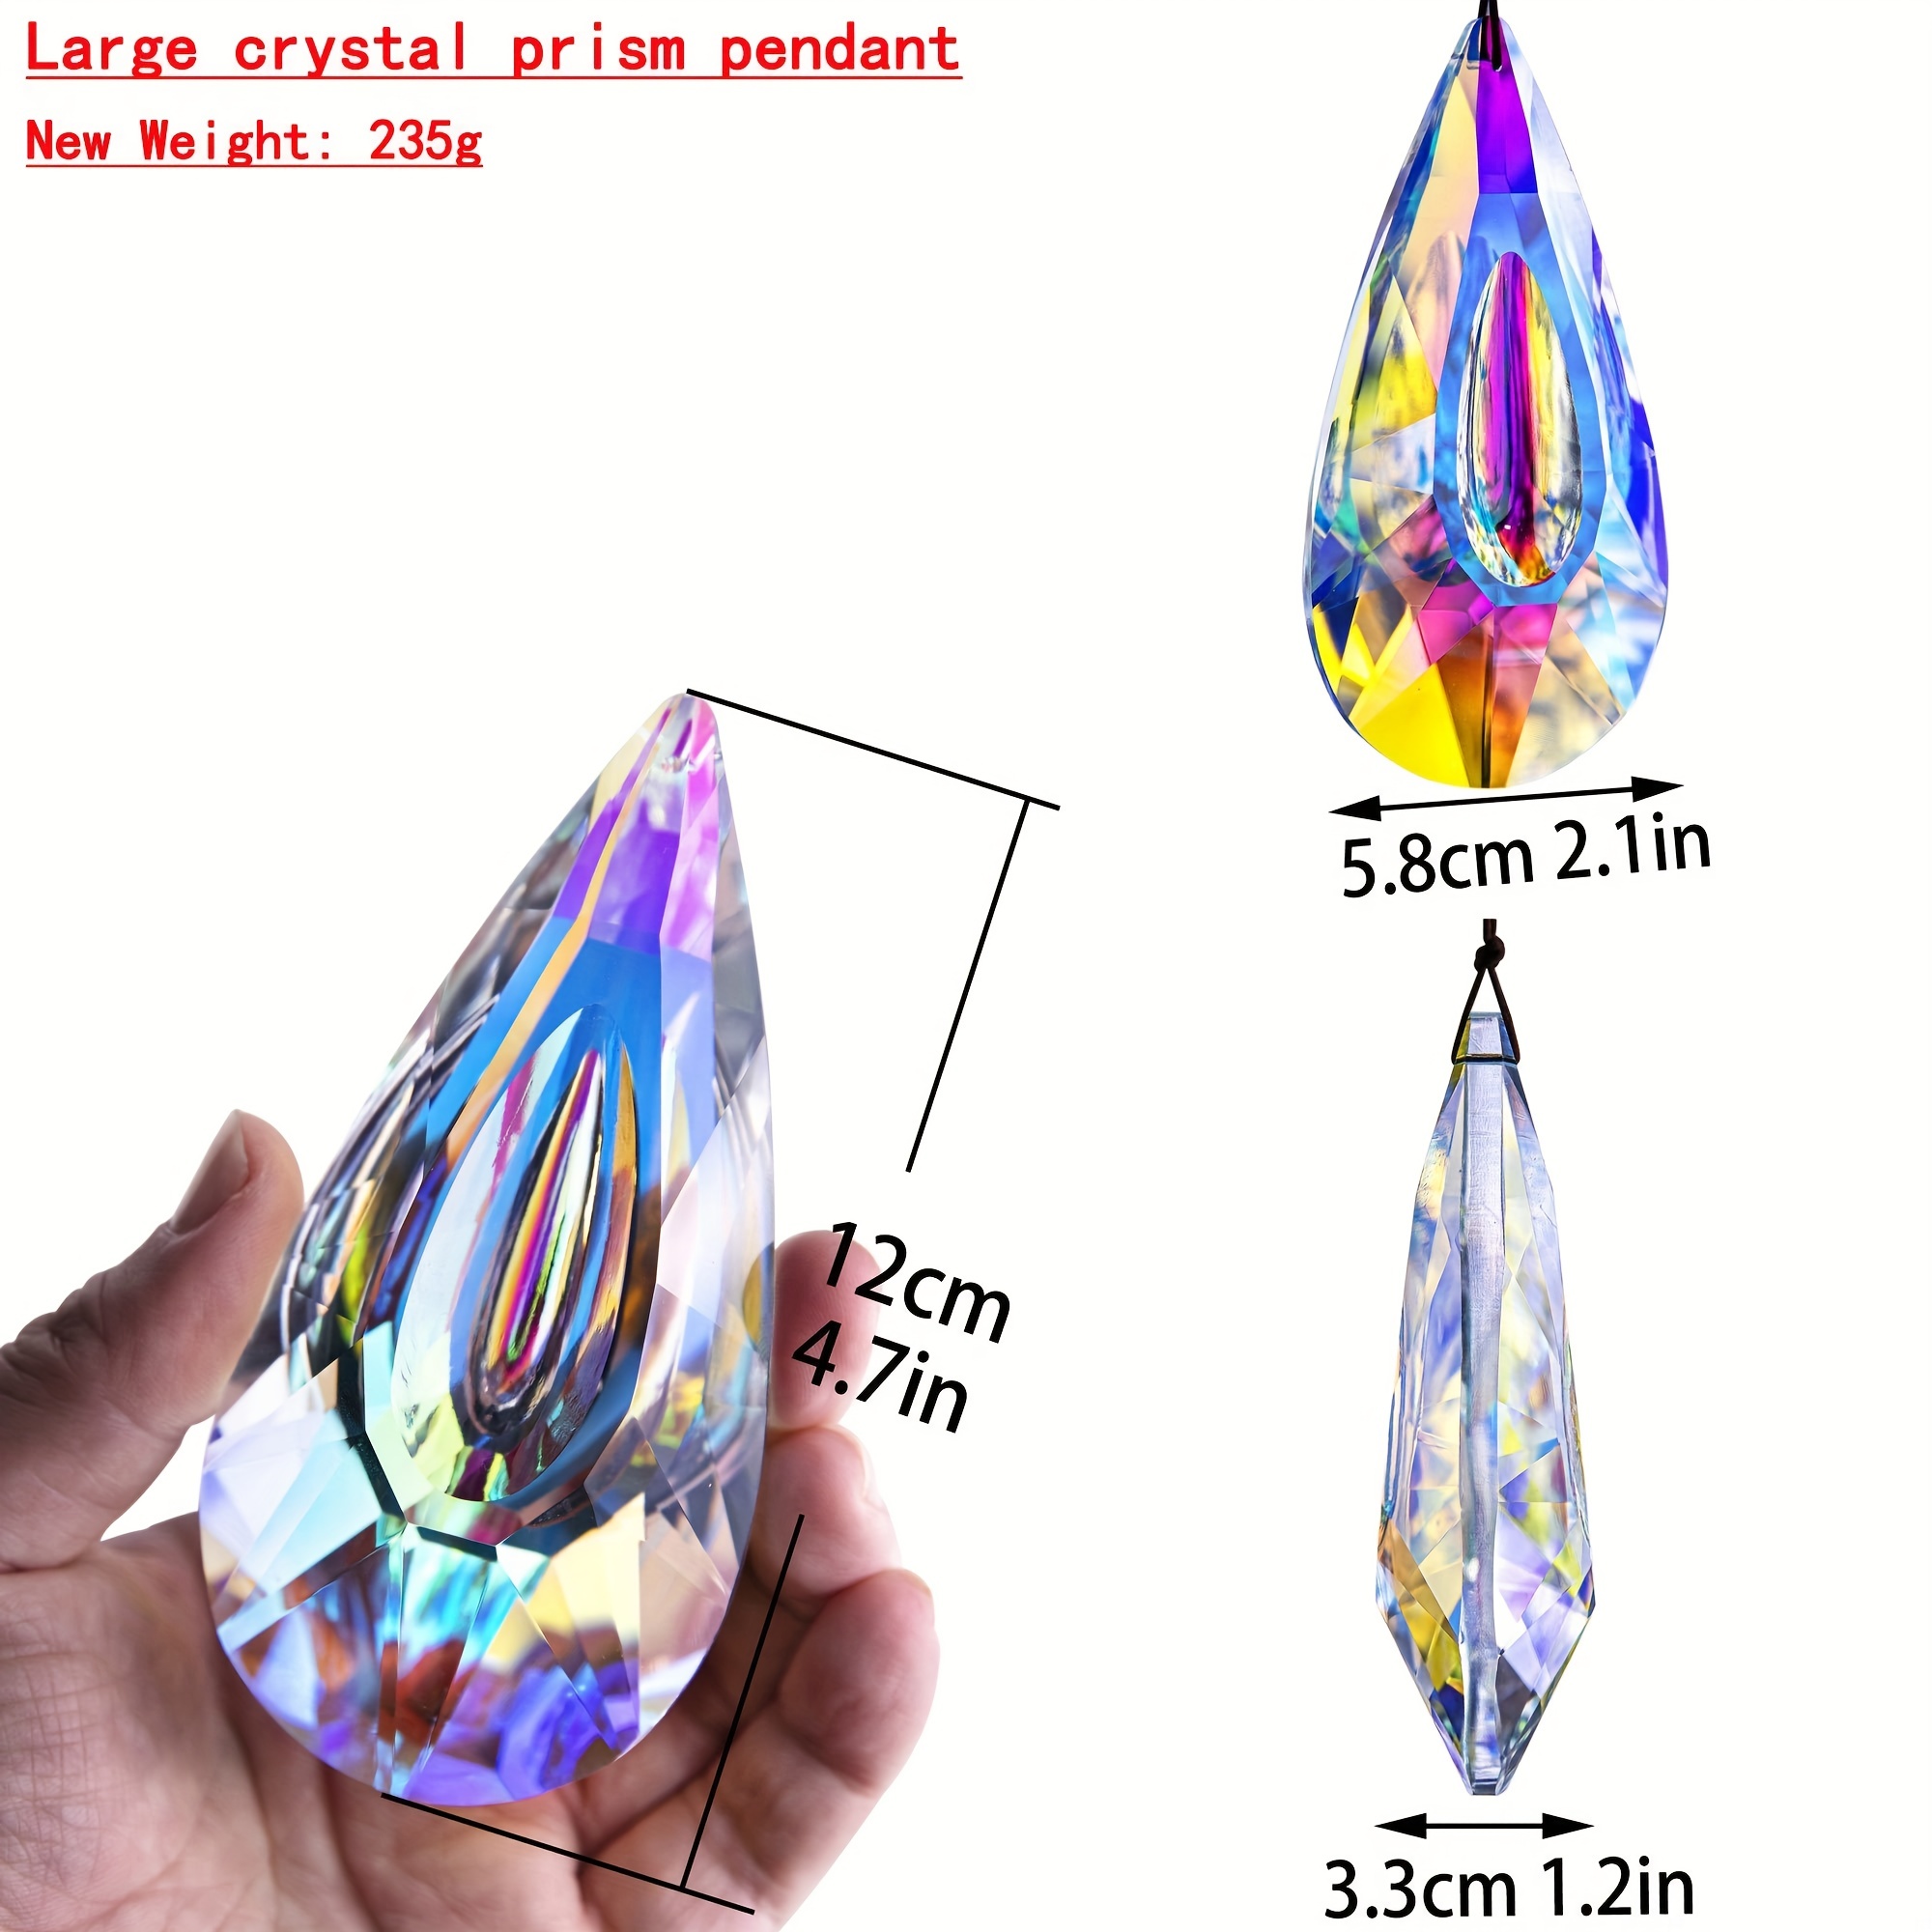 Prisme Boules à facettes cristal suspension attrape soleil - Escale  Sensorielle